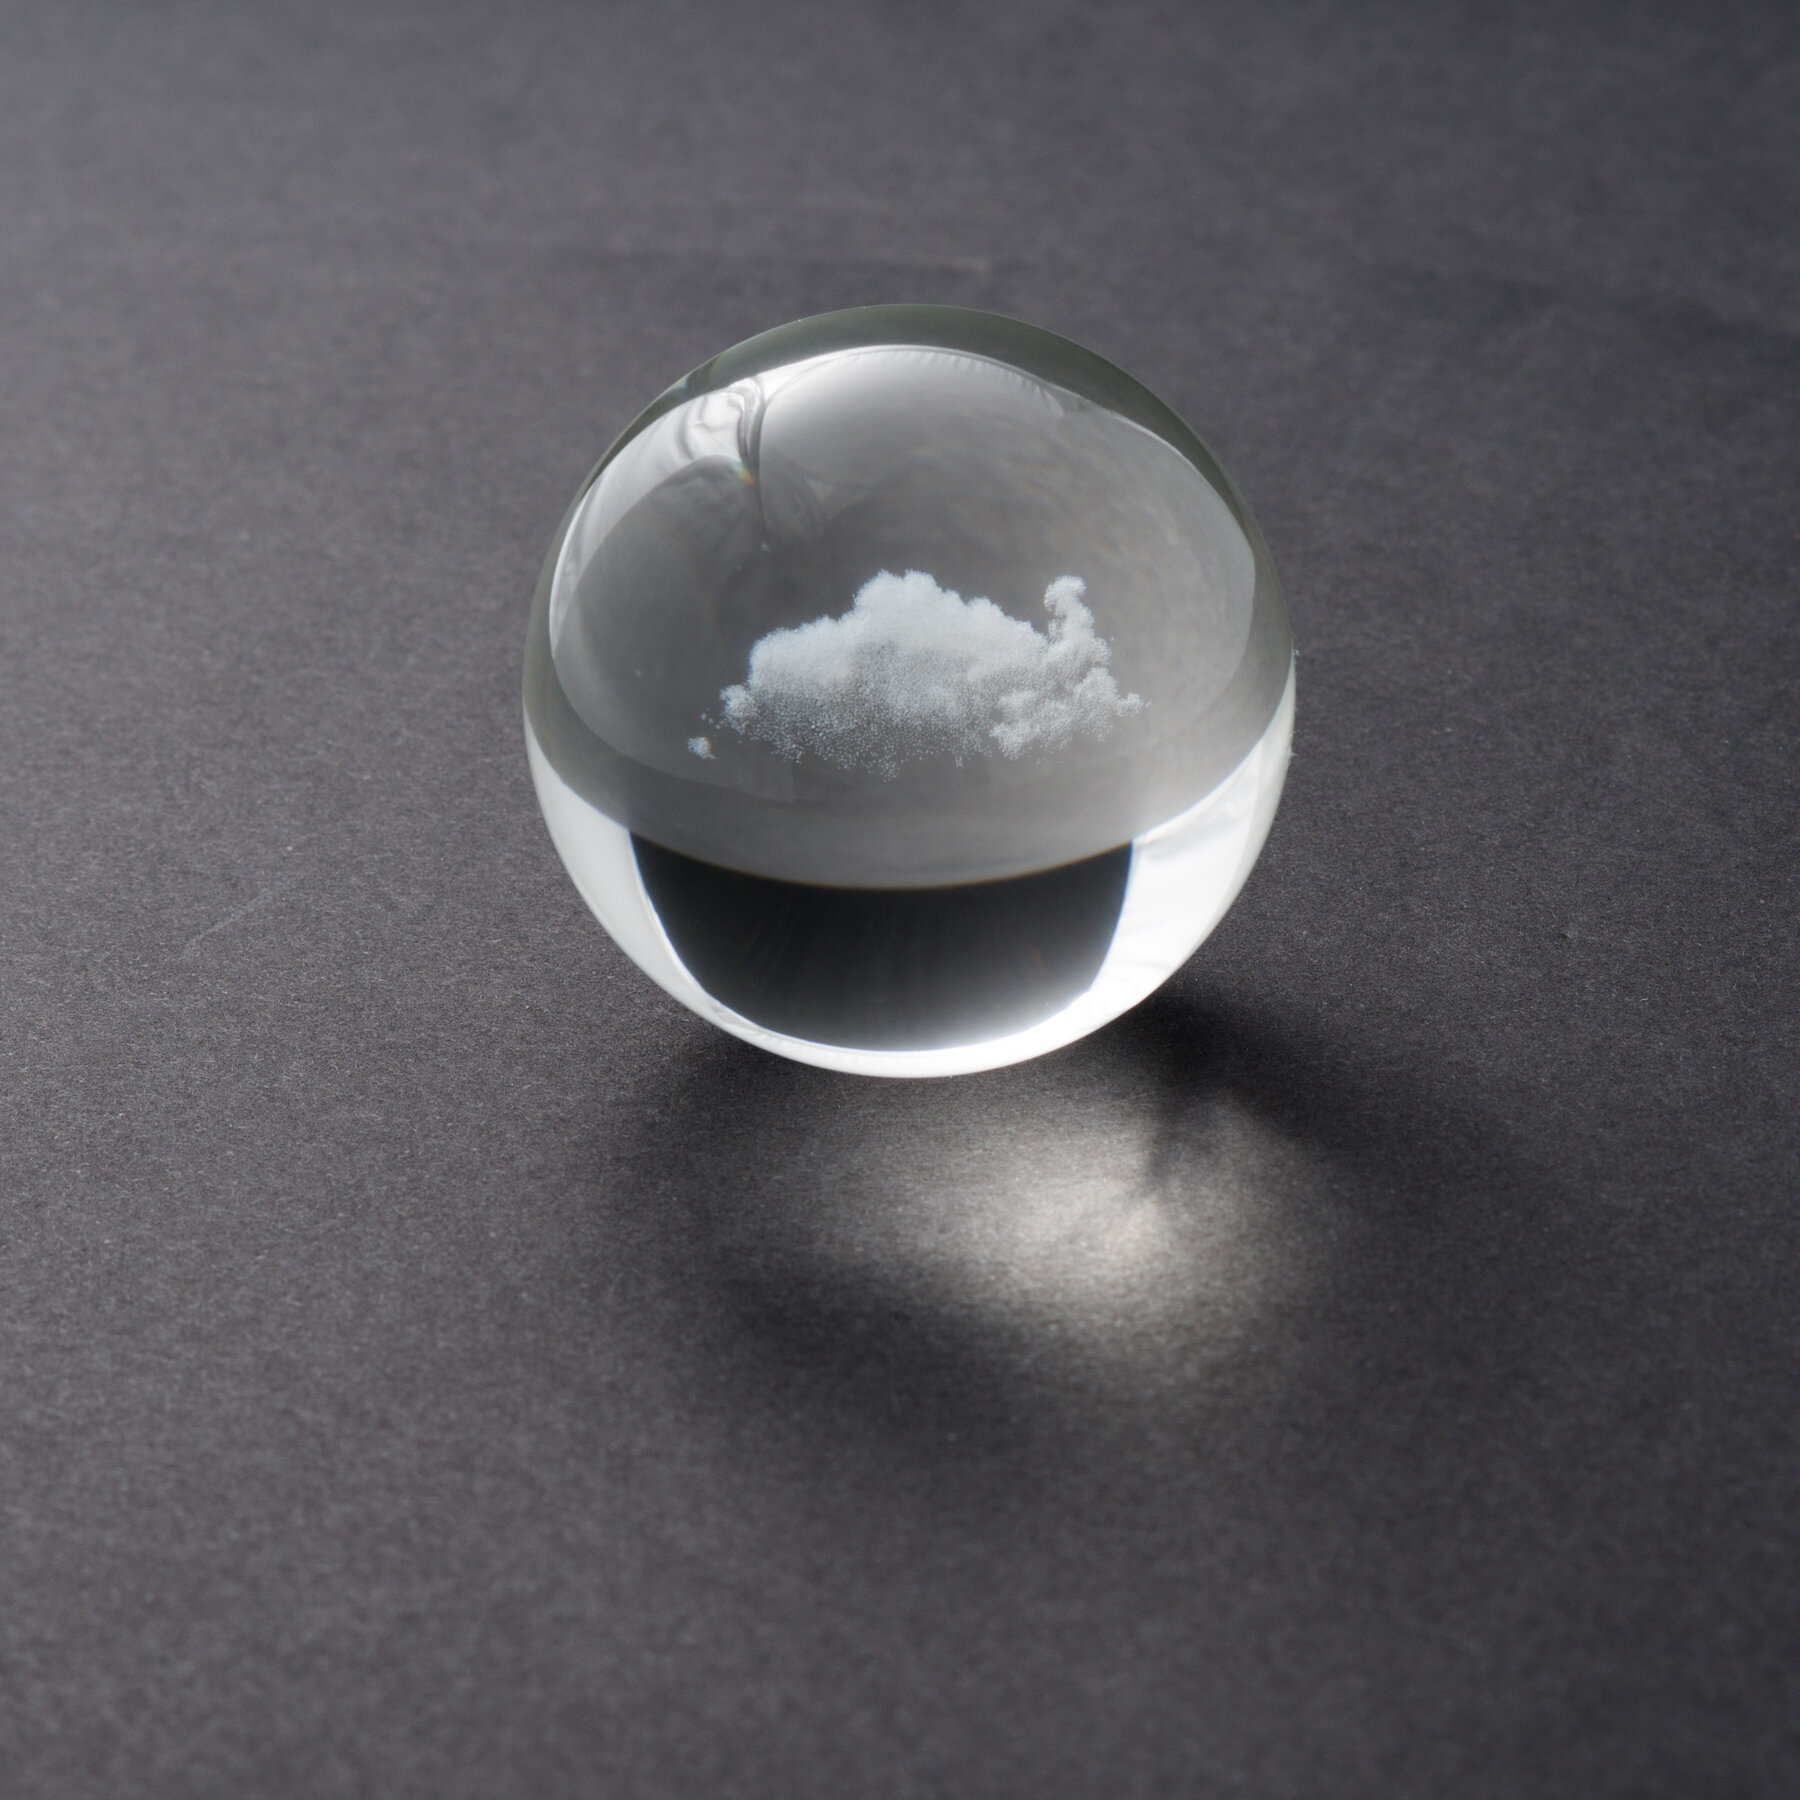 cloud_sphere_mini_1.75x1.75x1.75_inches_glass_2017_miya_ando_6.jpg